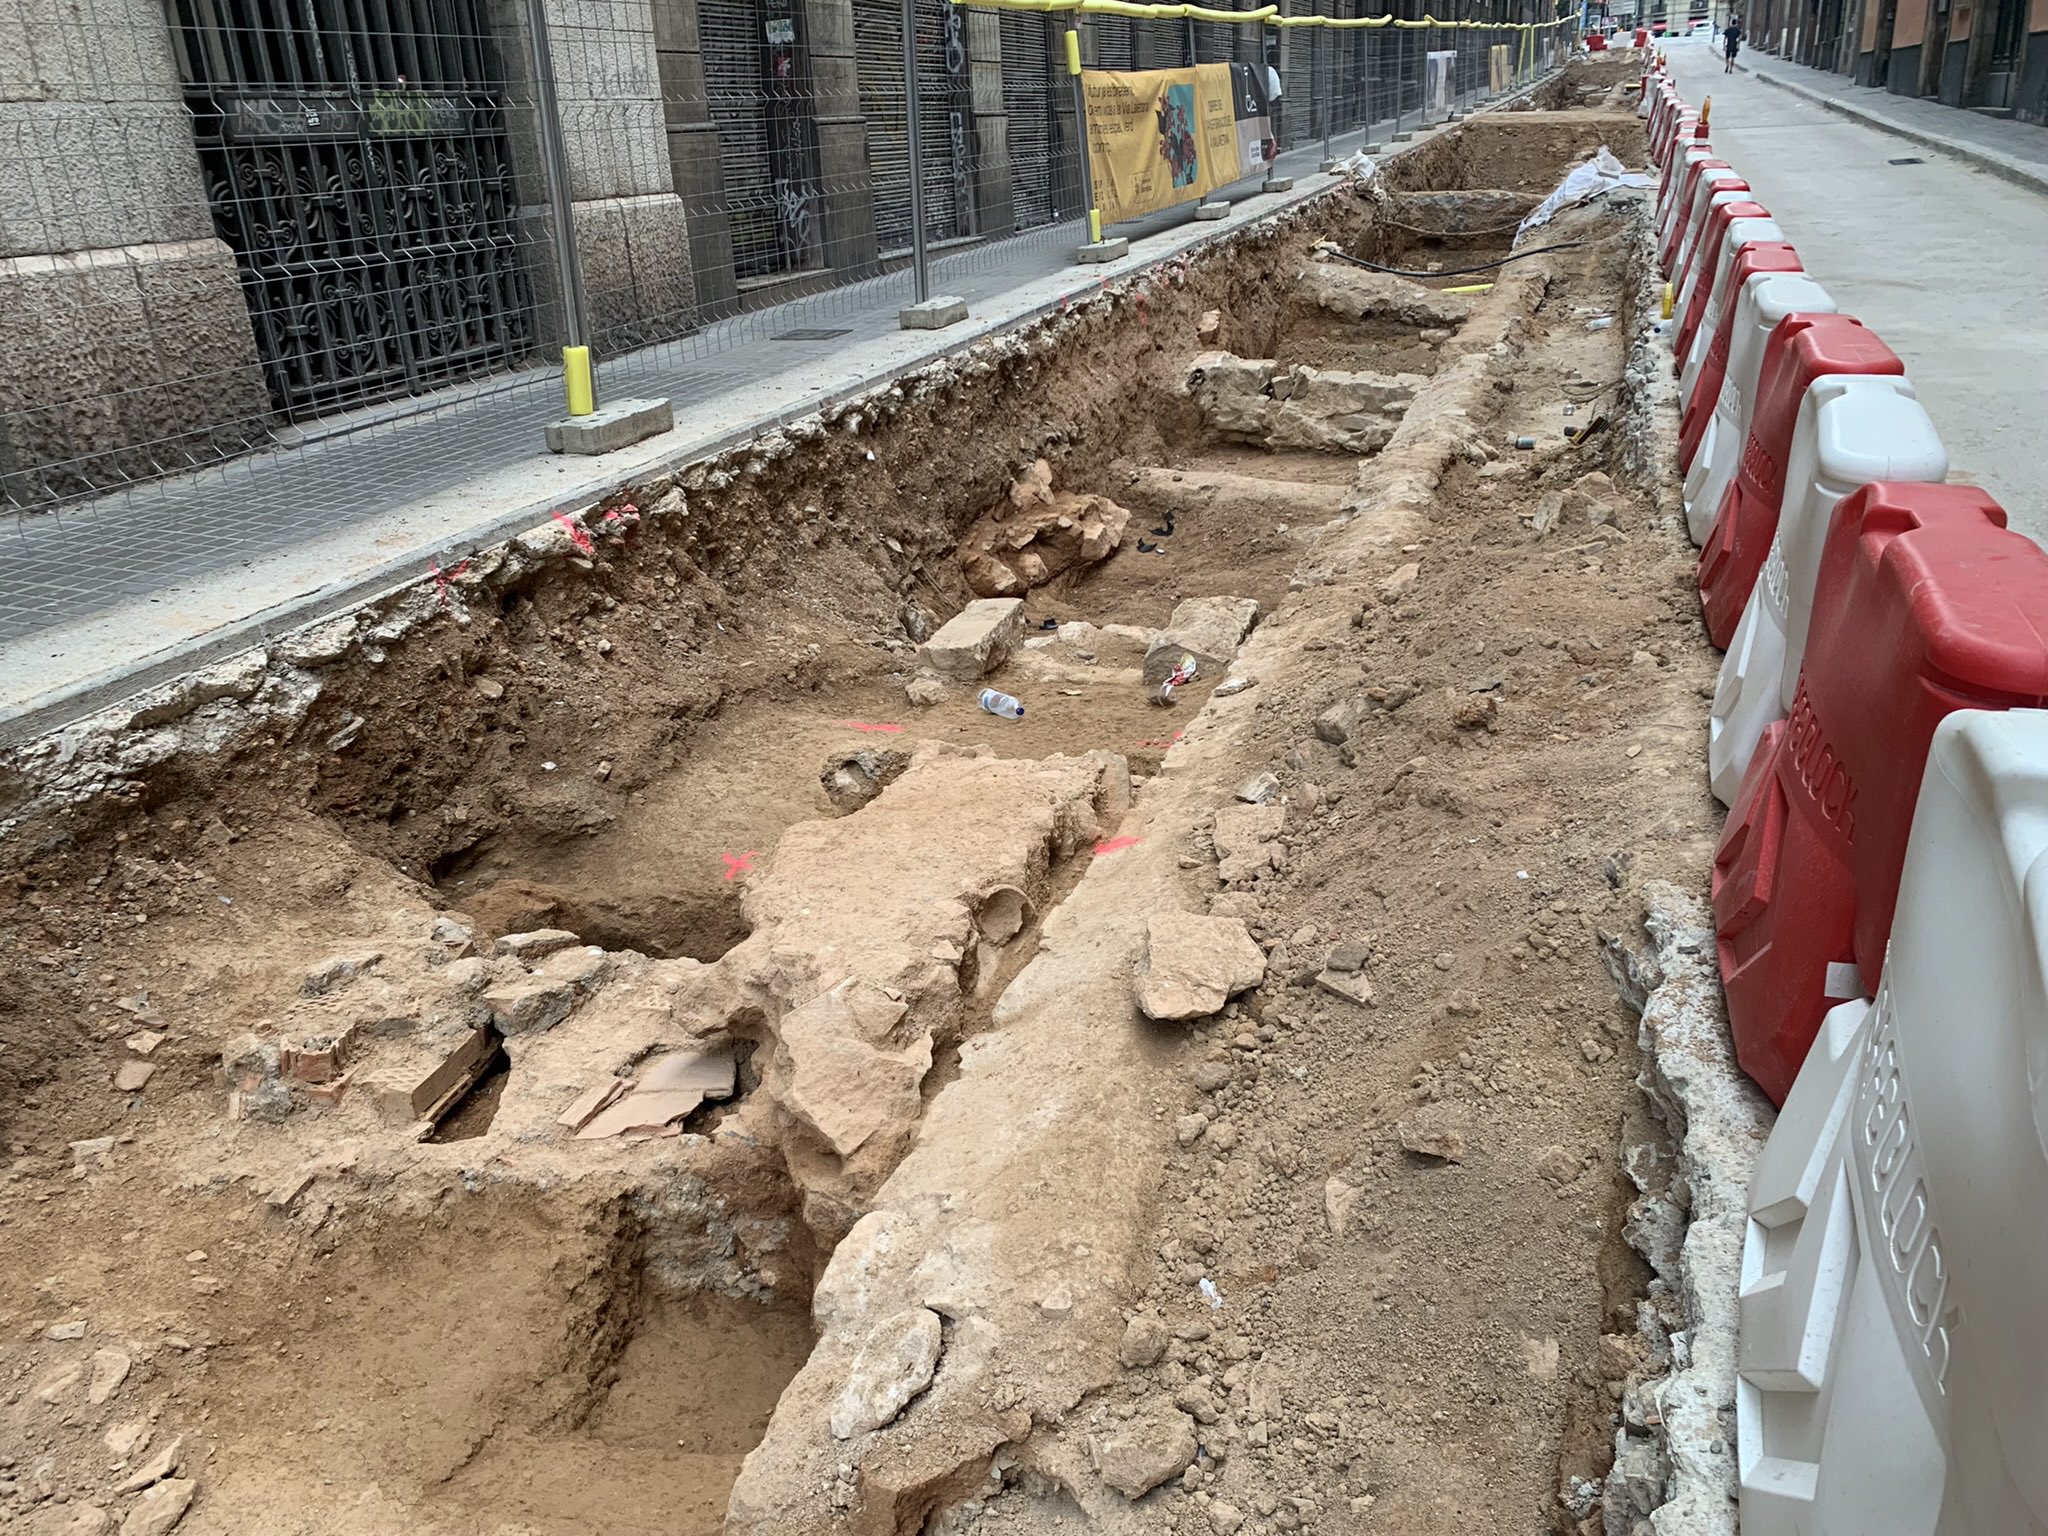 Afloran nuevos restos arqueológicos en el centro de Barcelona, ahora en la calle Jonqueres